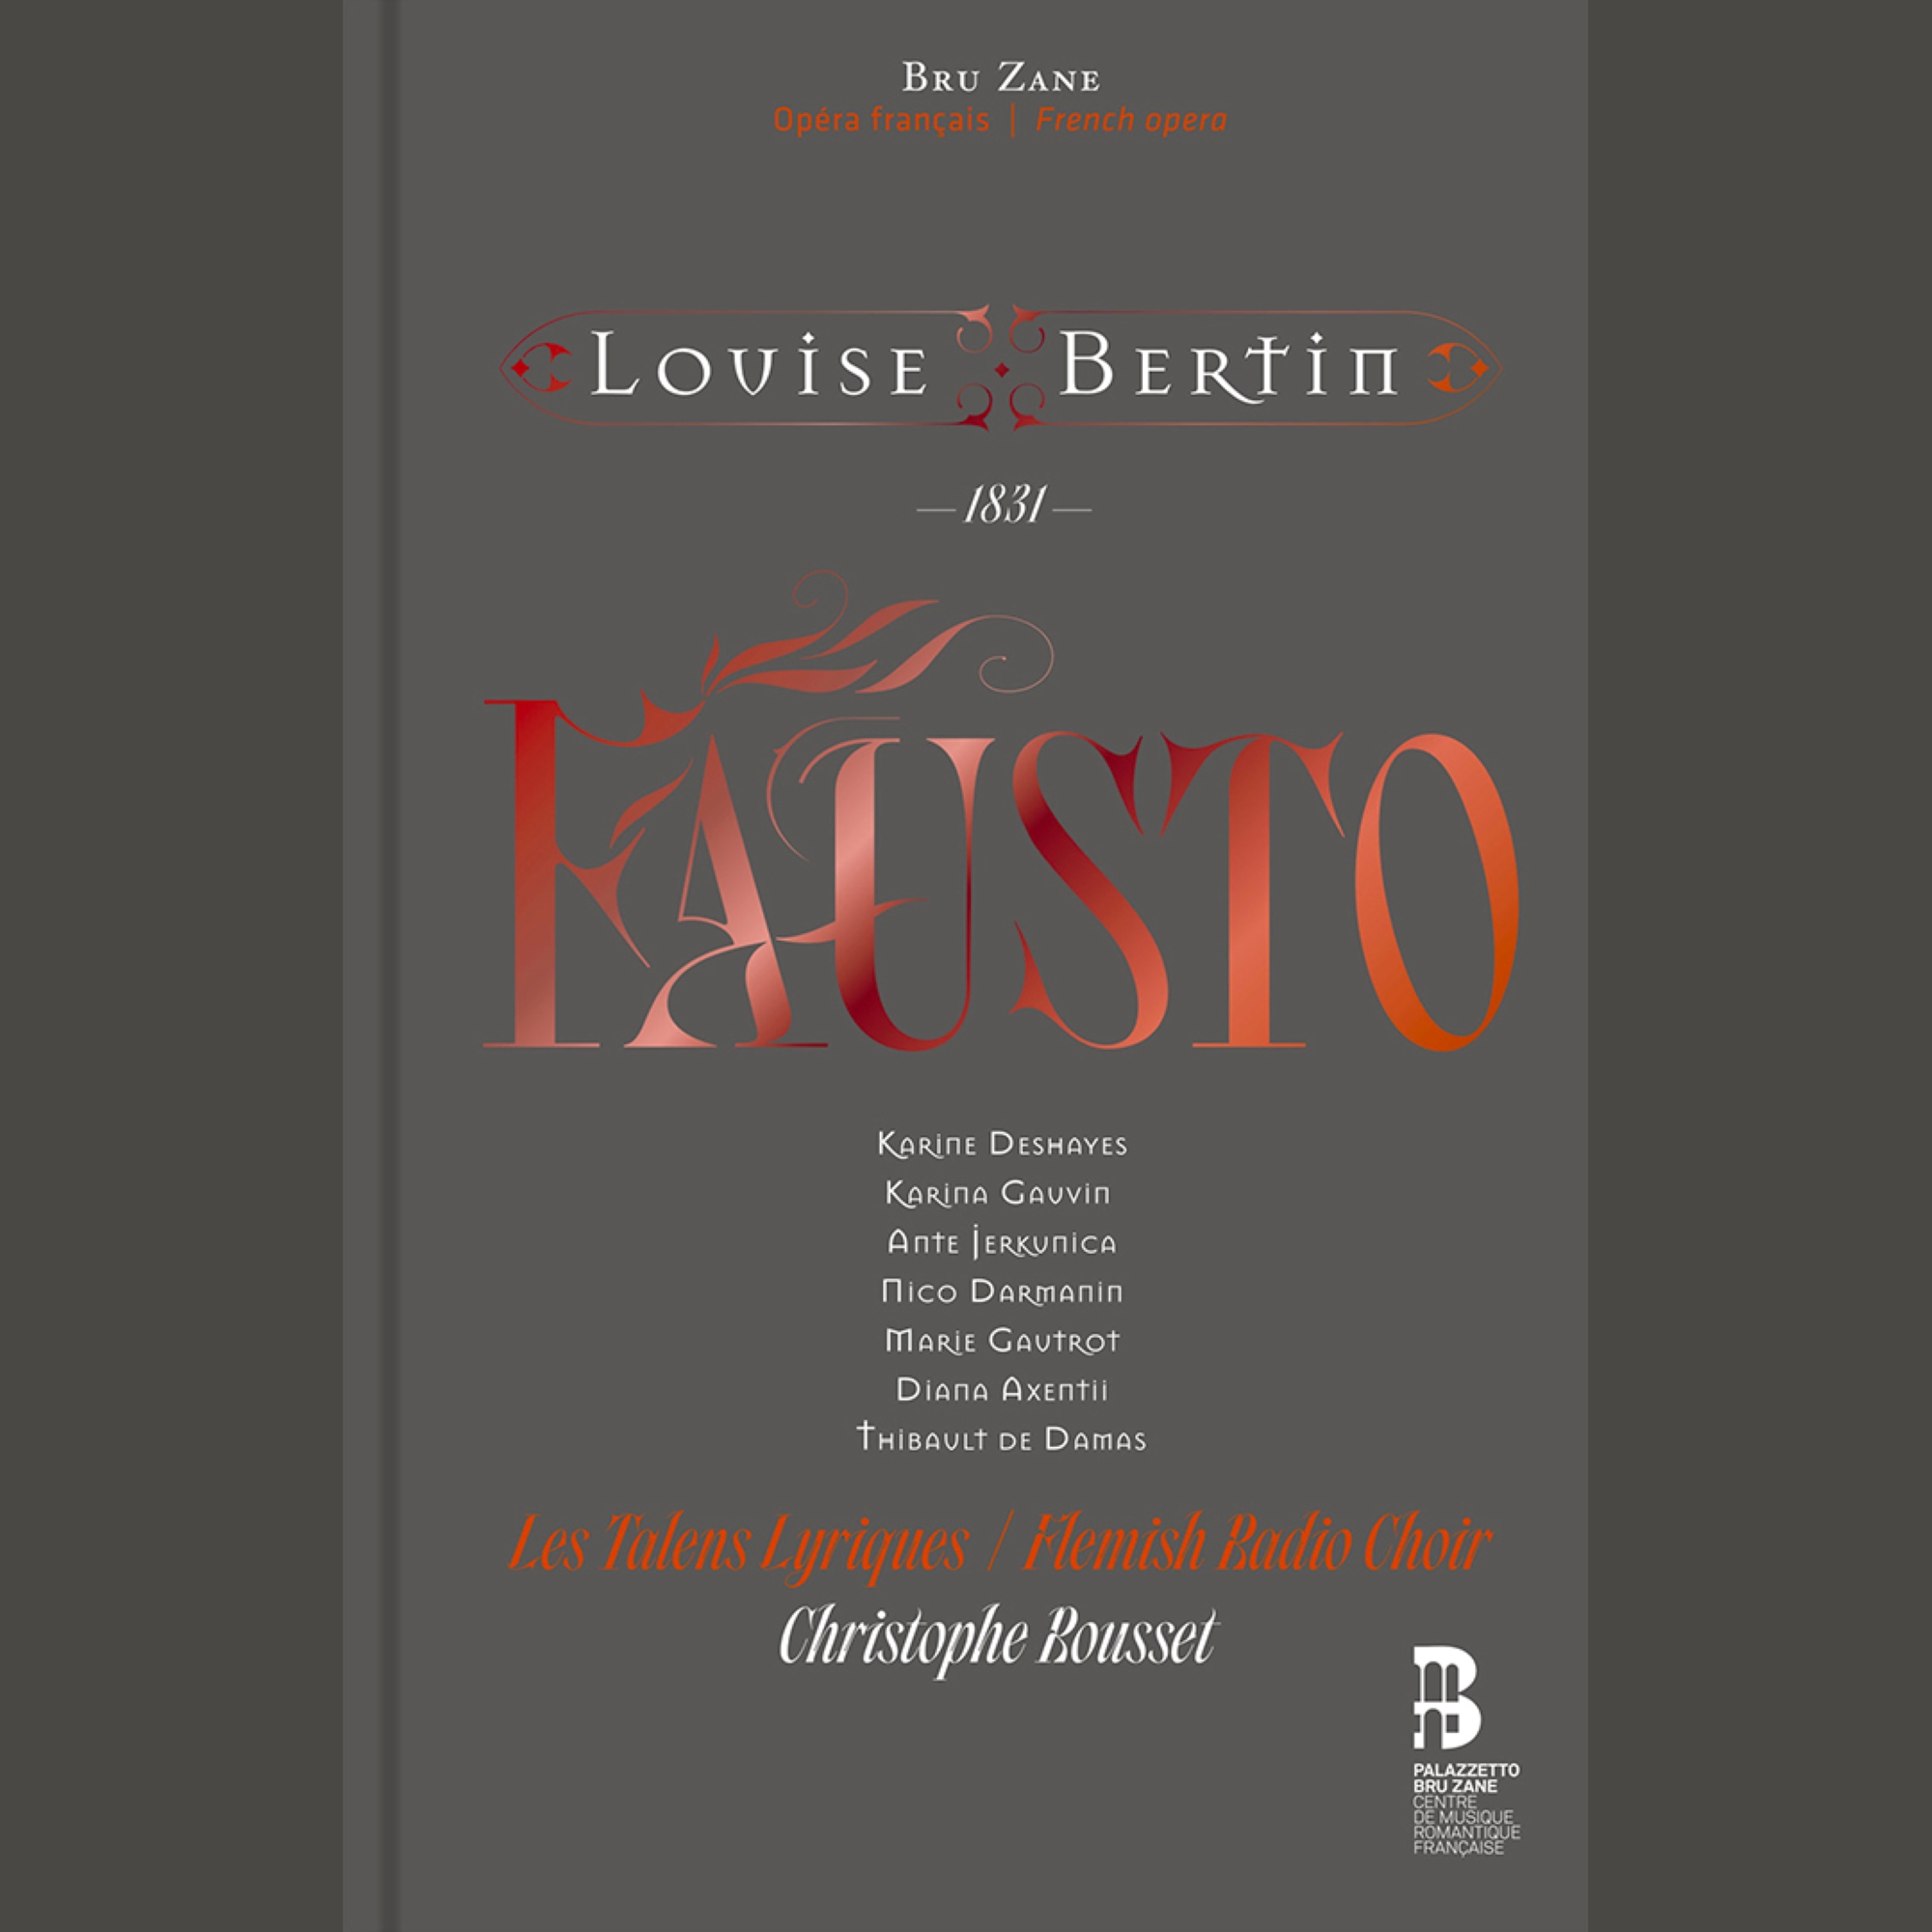 Fausto- Les Talens Lyriques (foto Eric Larrayadieu)